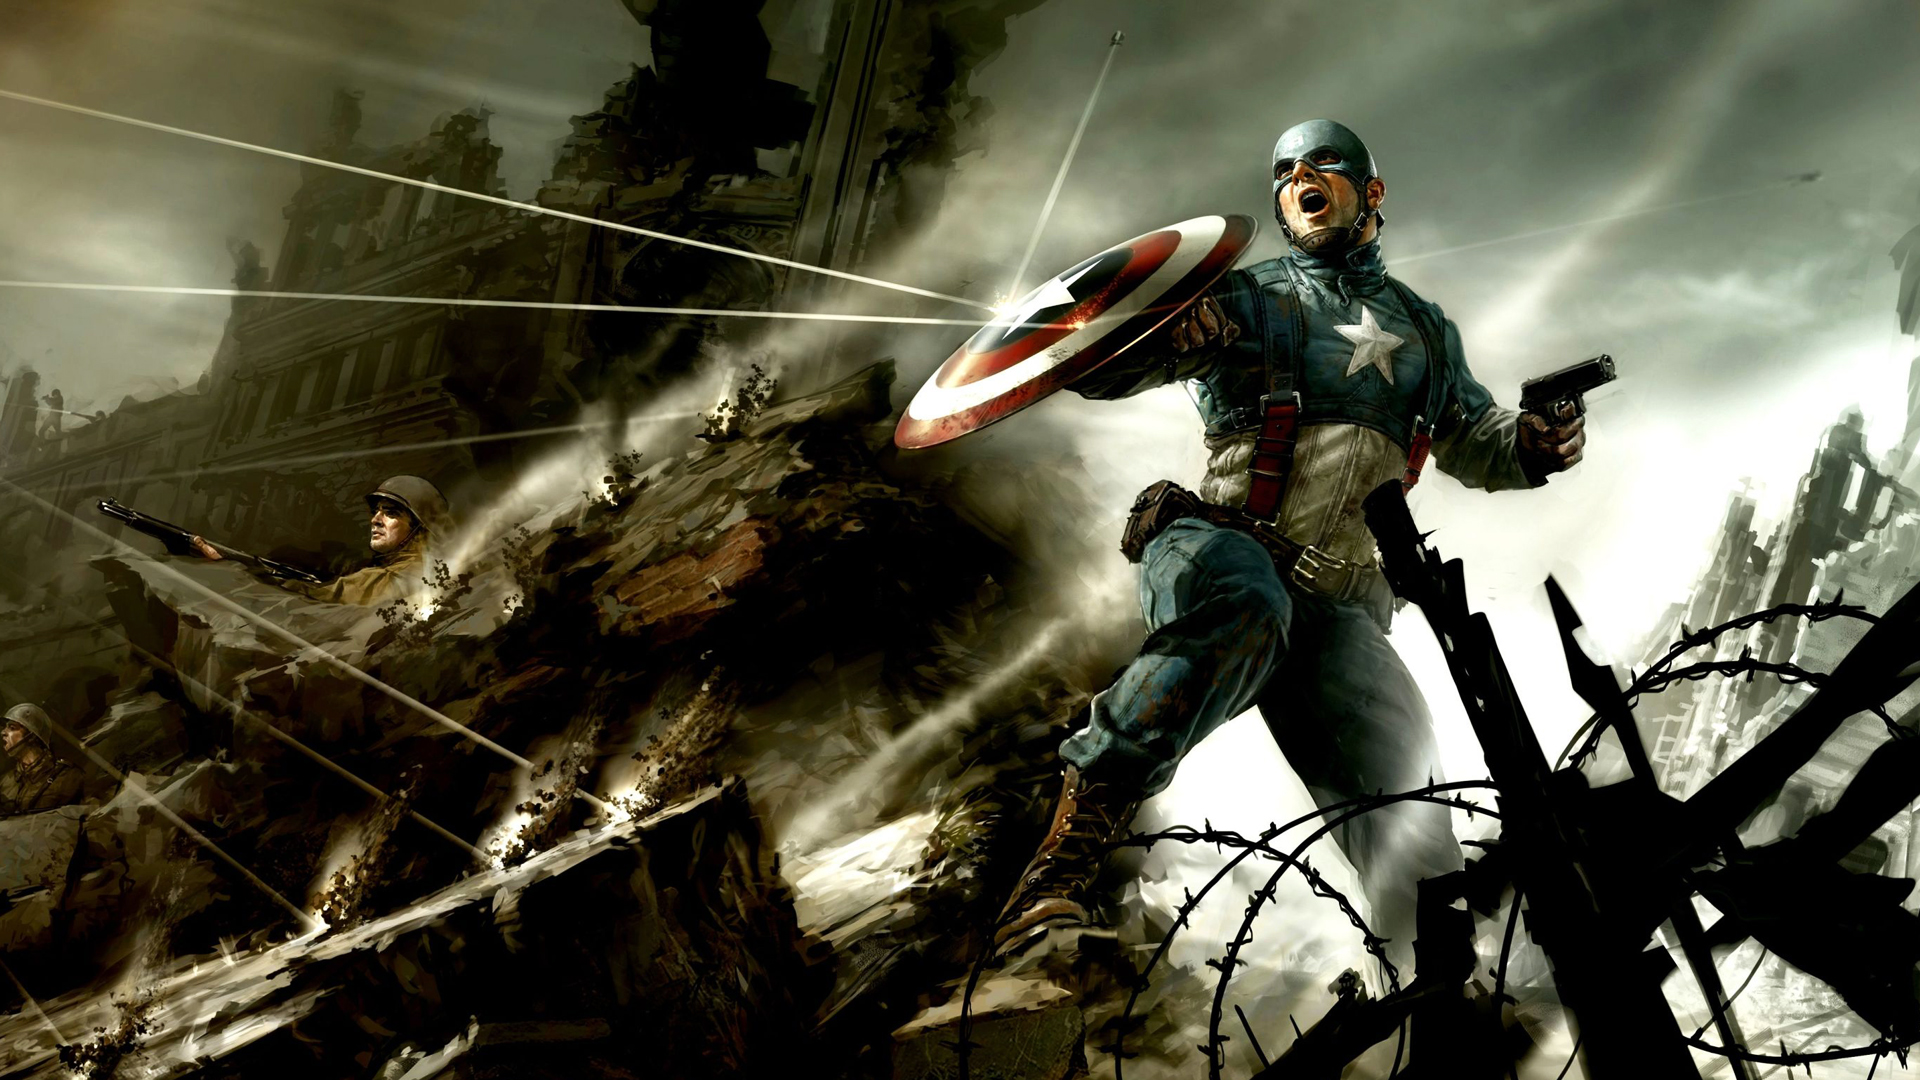 캡틴 아메리카 바탕 화면 배경,액션 어드벤처 게임,pc 게임,소설 속의 인물,슈퍼 히어로,cg 삽화